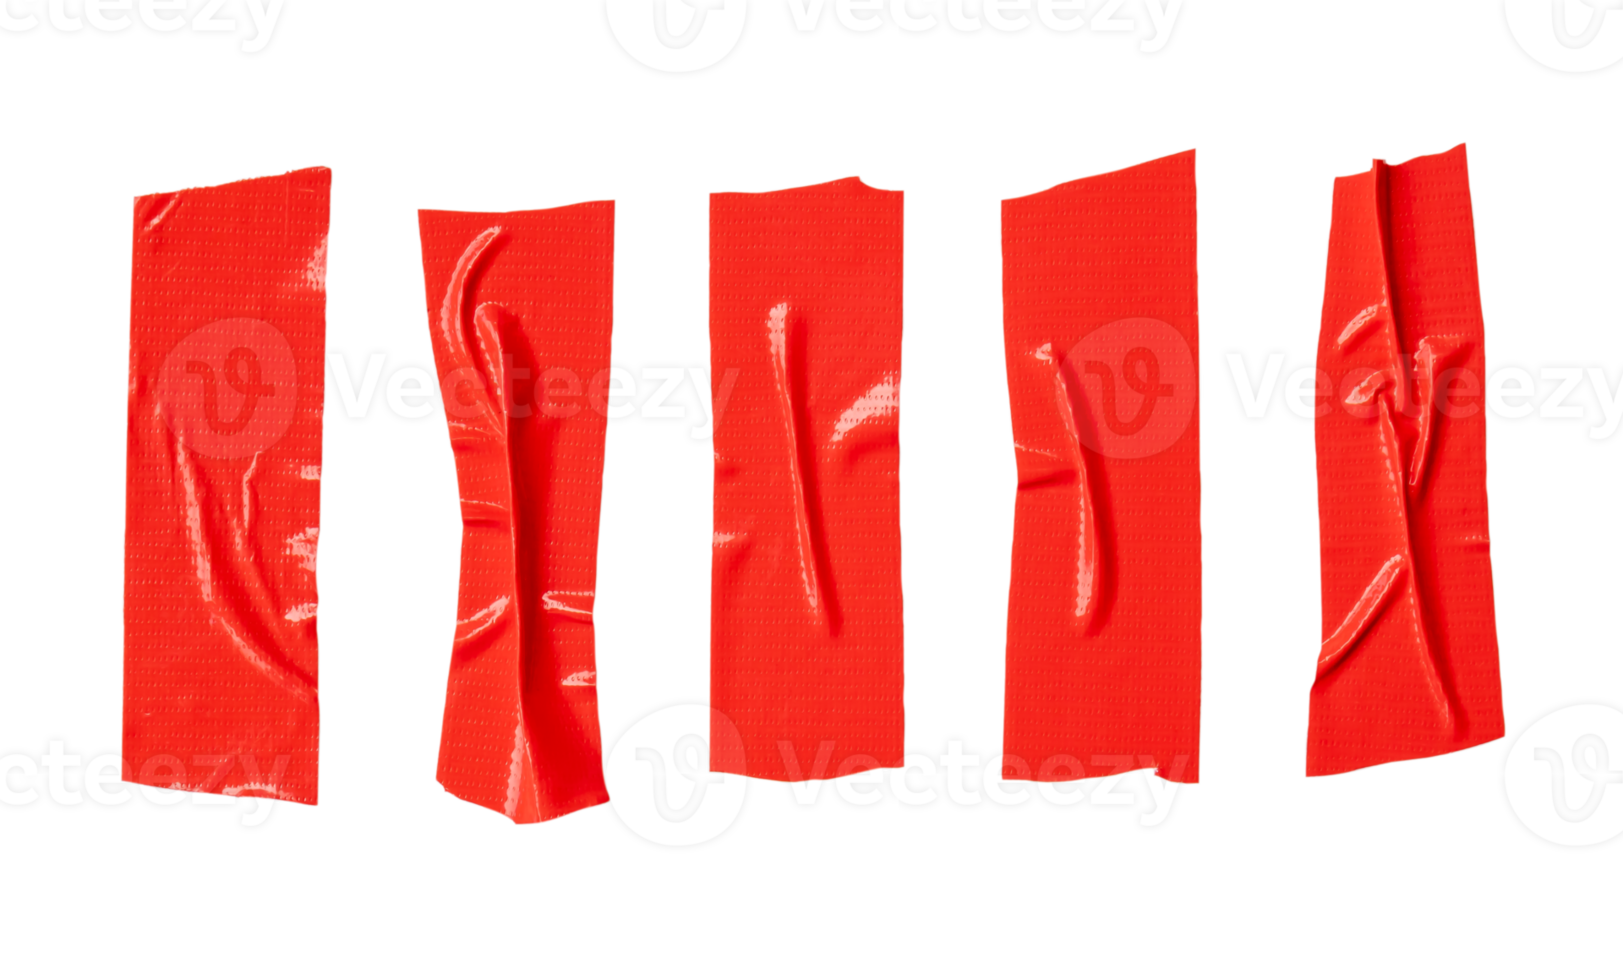 rojo adhesivo vinilo cinta rayas en conjunto aislado con recorte camino en png archivo formato. parte superior ver y plano laico